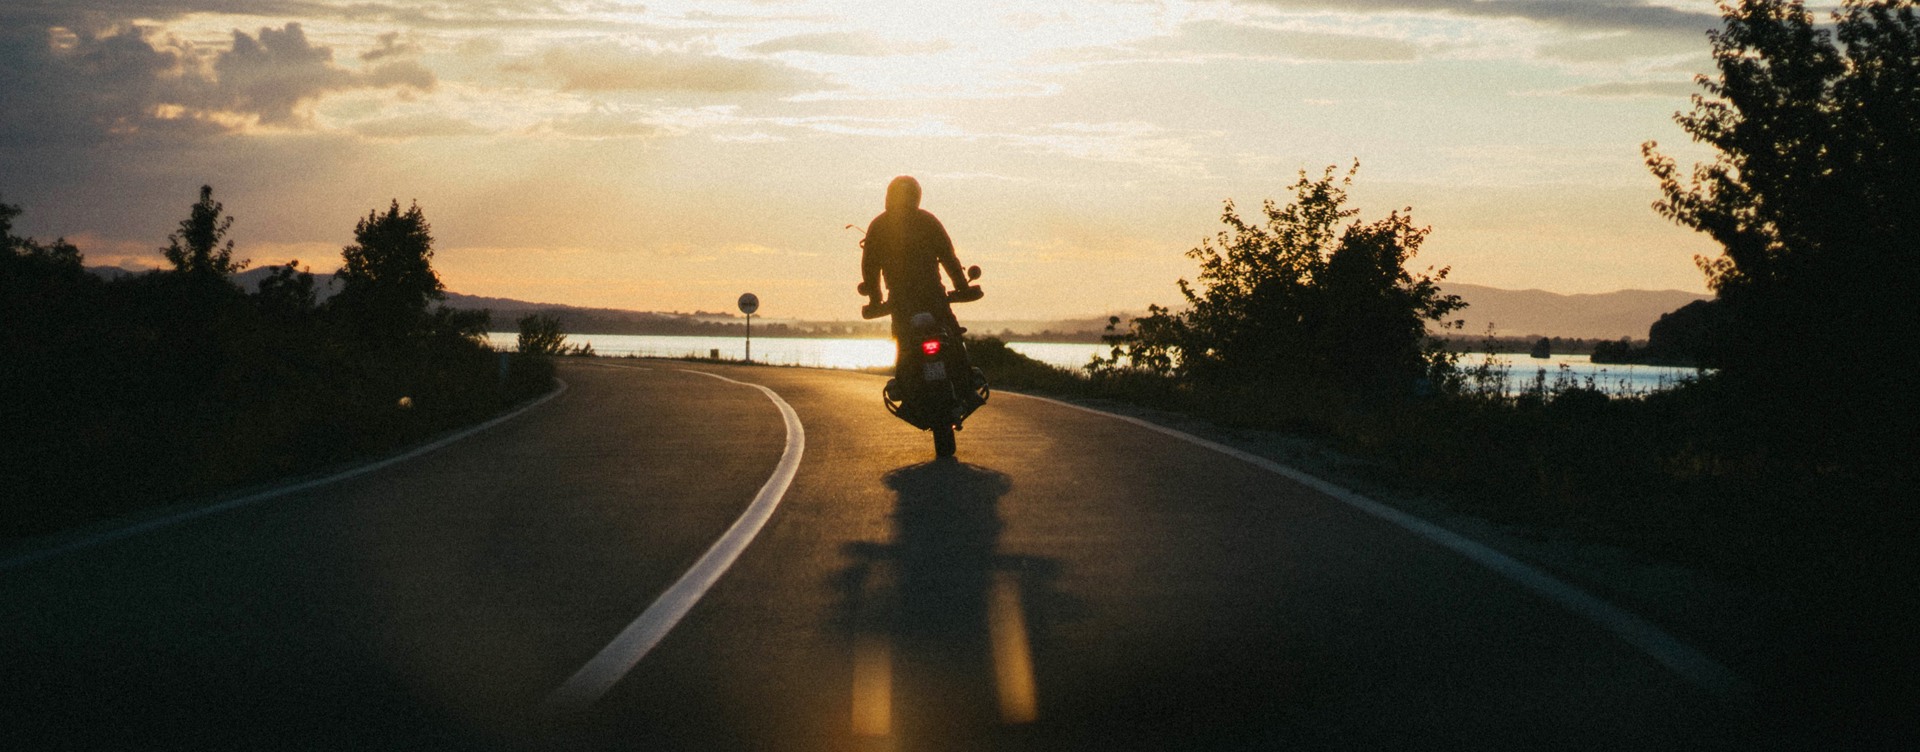 Entdecken Sie die schönsten Motorradrouten
voller kultureller Höhepunkte